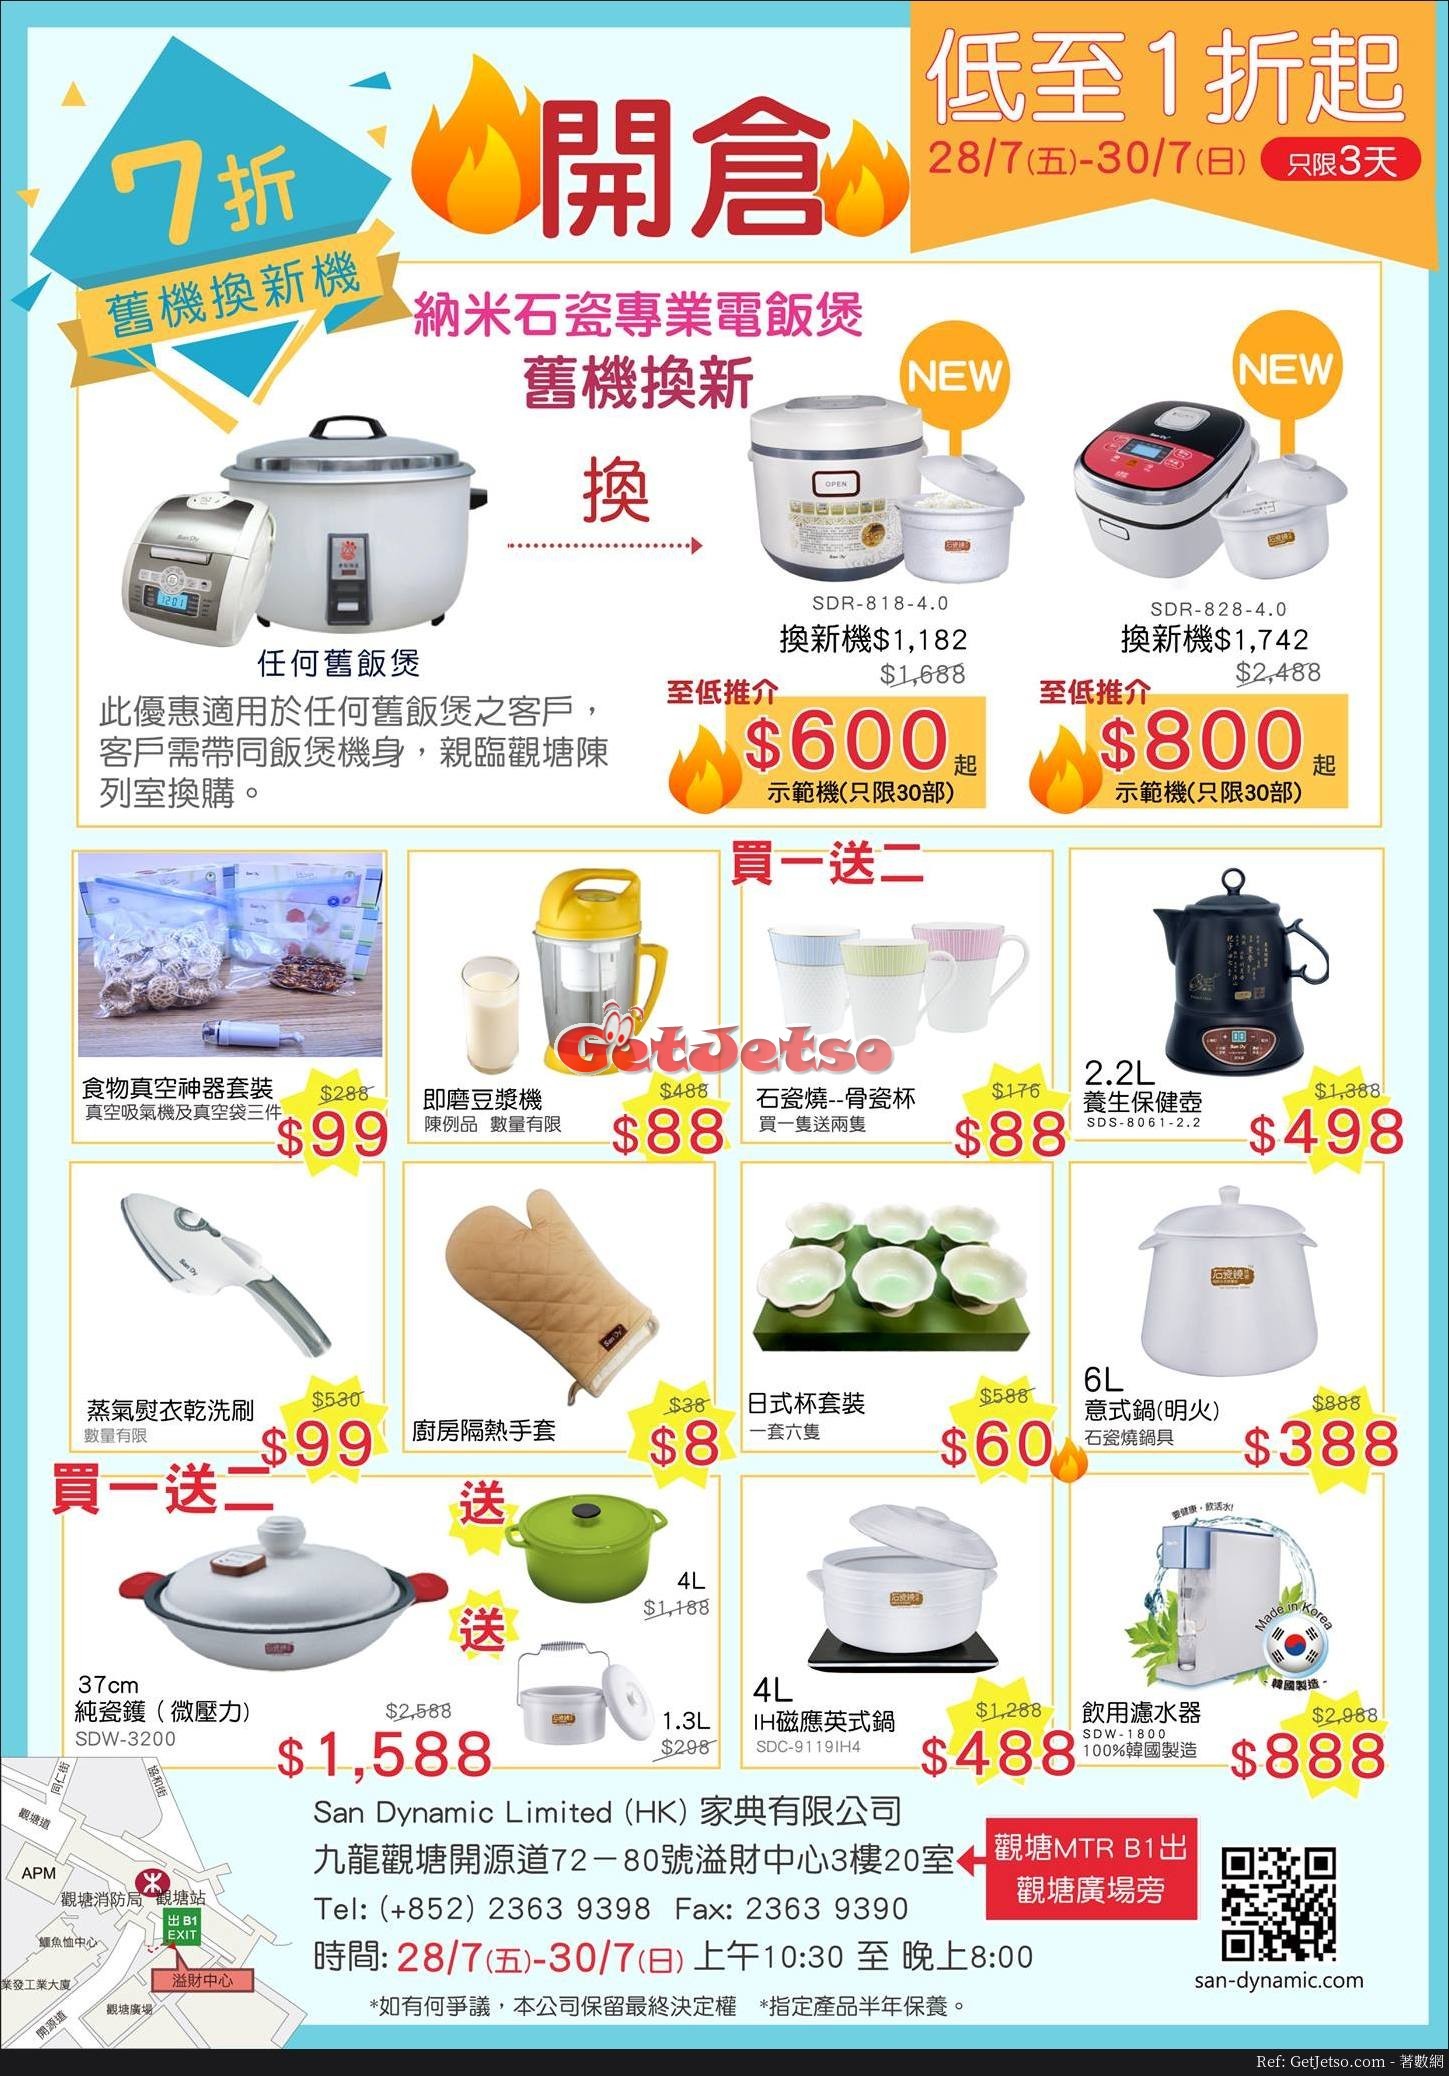 廚具用品及家庭小電器低至1折減價優惠(至17年7月30日)圖片1